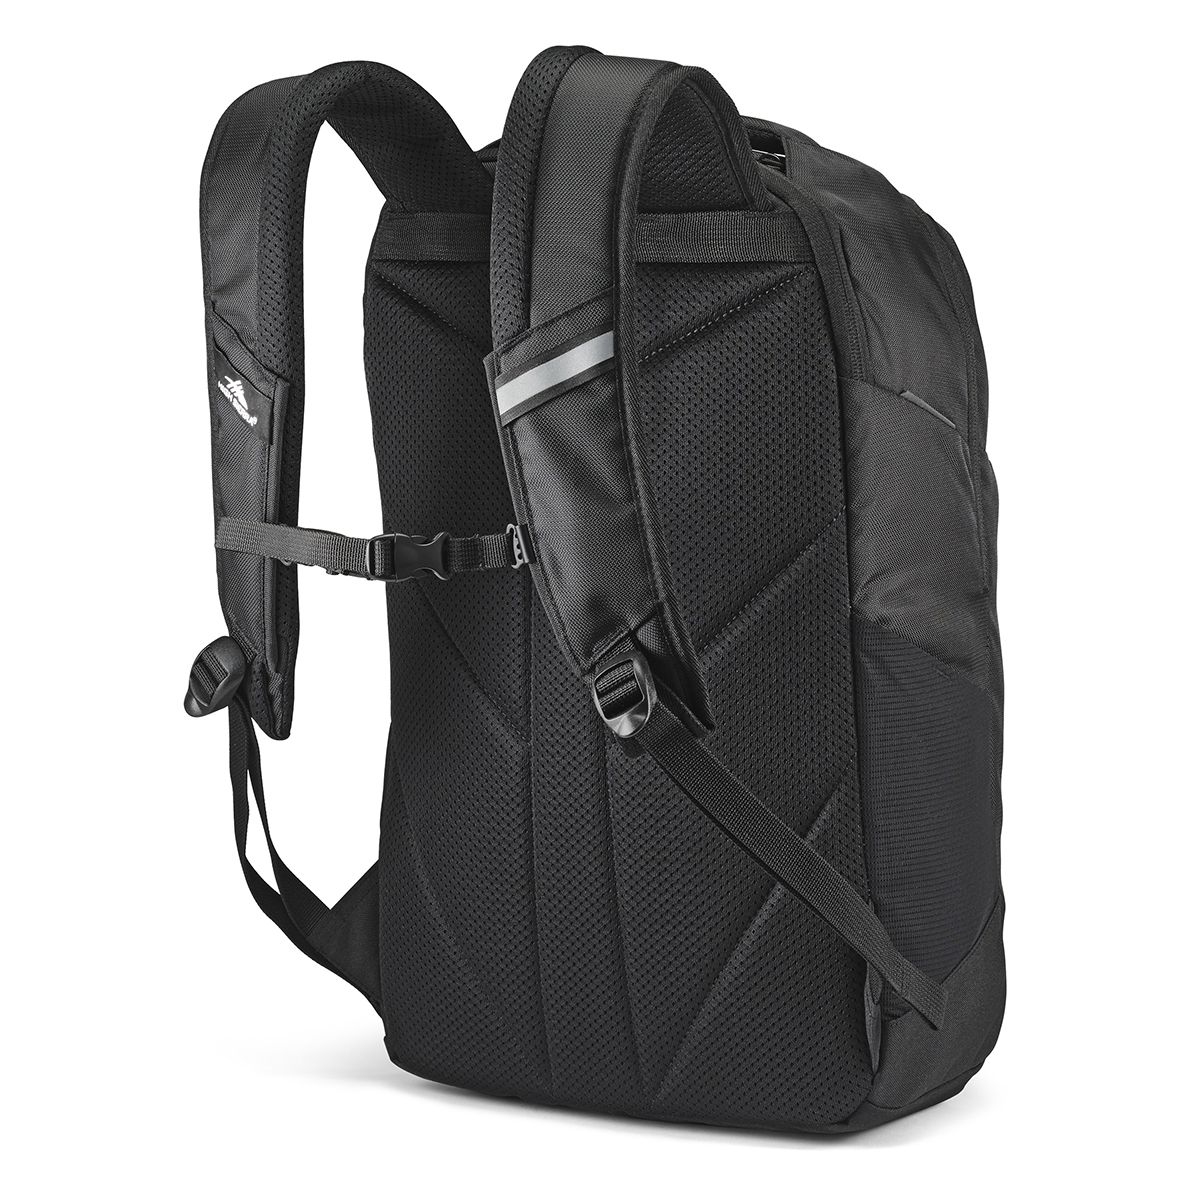 High Sierra(R) Swerve Pro Black Backpack